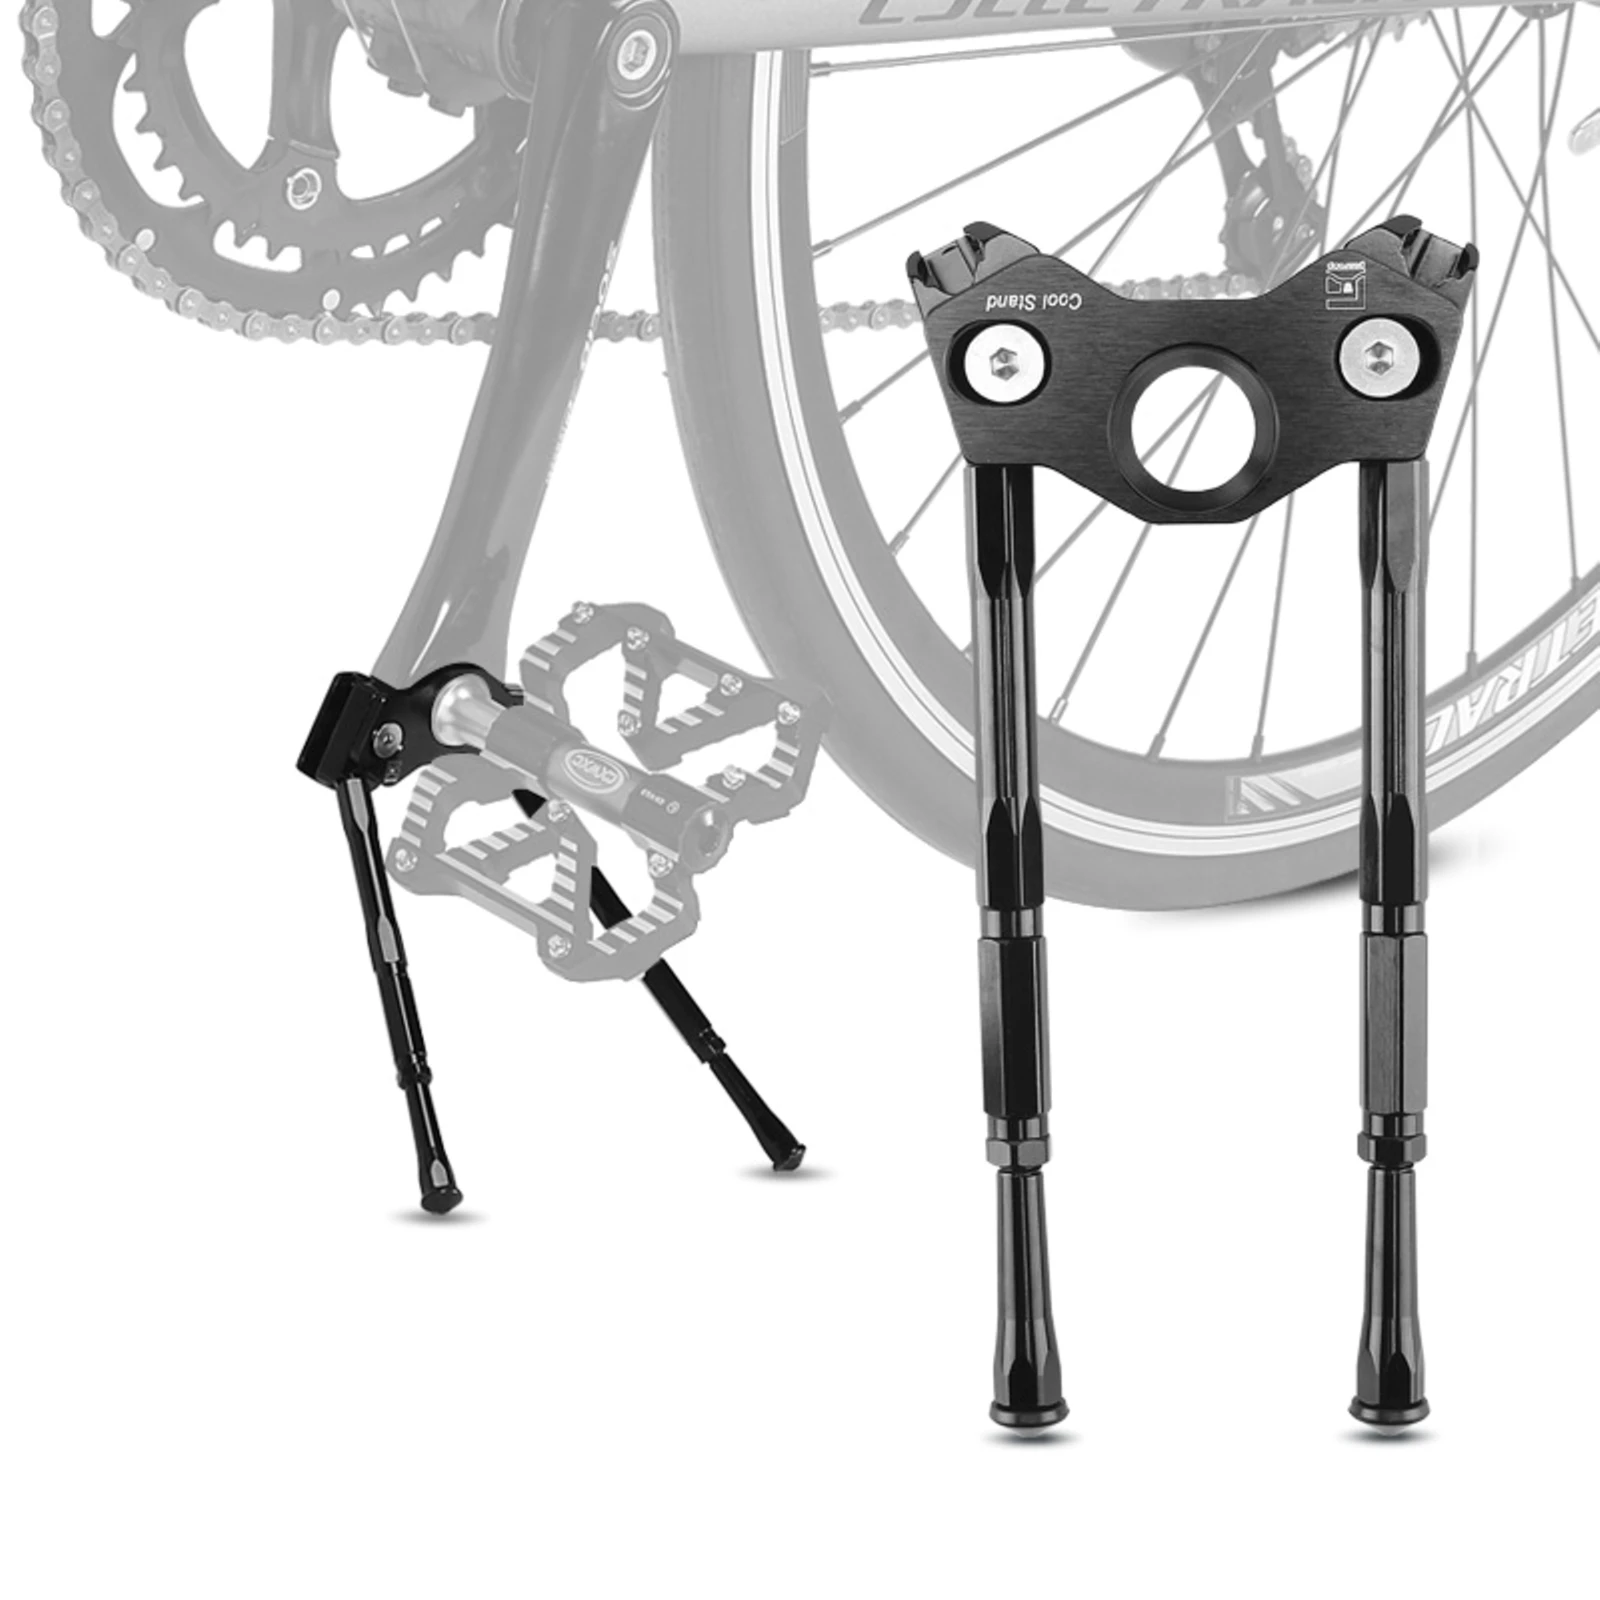 

Кронштейн для педали велосипеда, регулируемый, из алюминиевого сплава, черный, простой в установке, компактный, легкий, практичный, удобный, ...